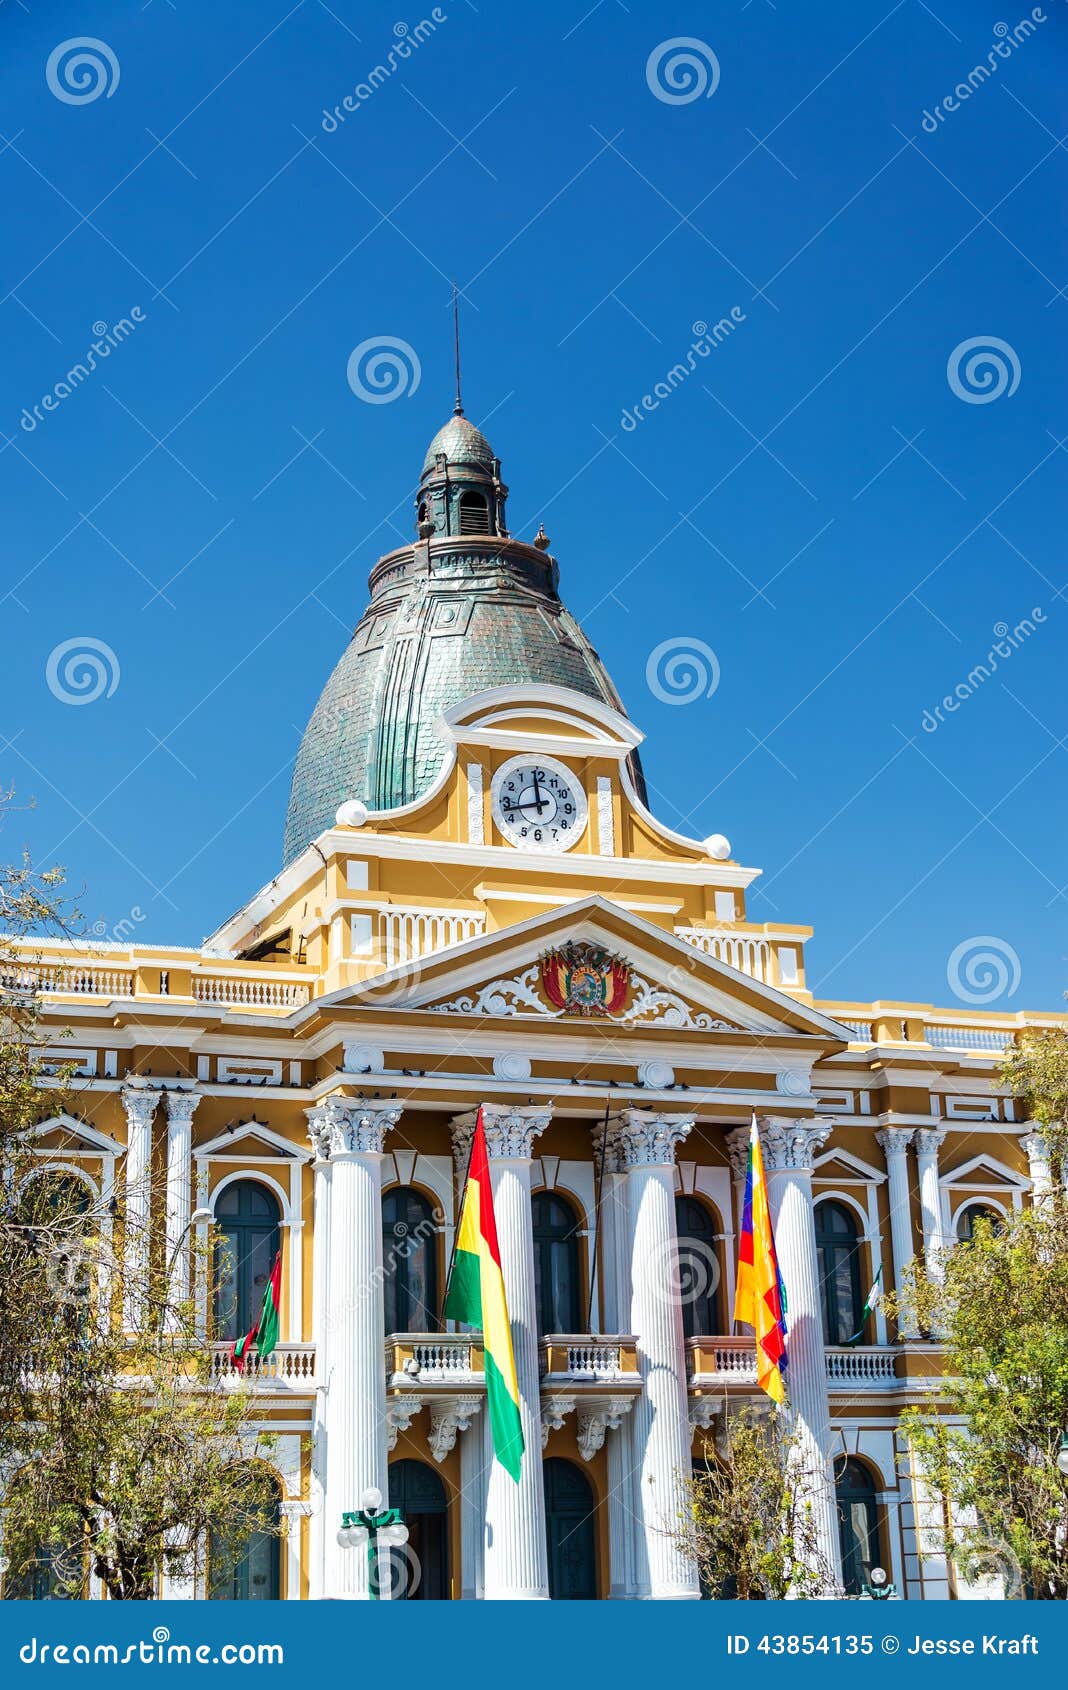 la paz, bolivia legislature building